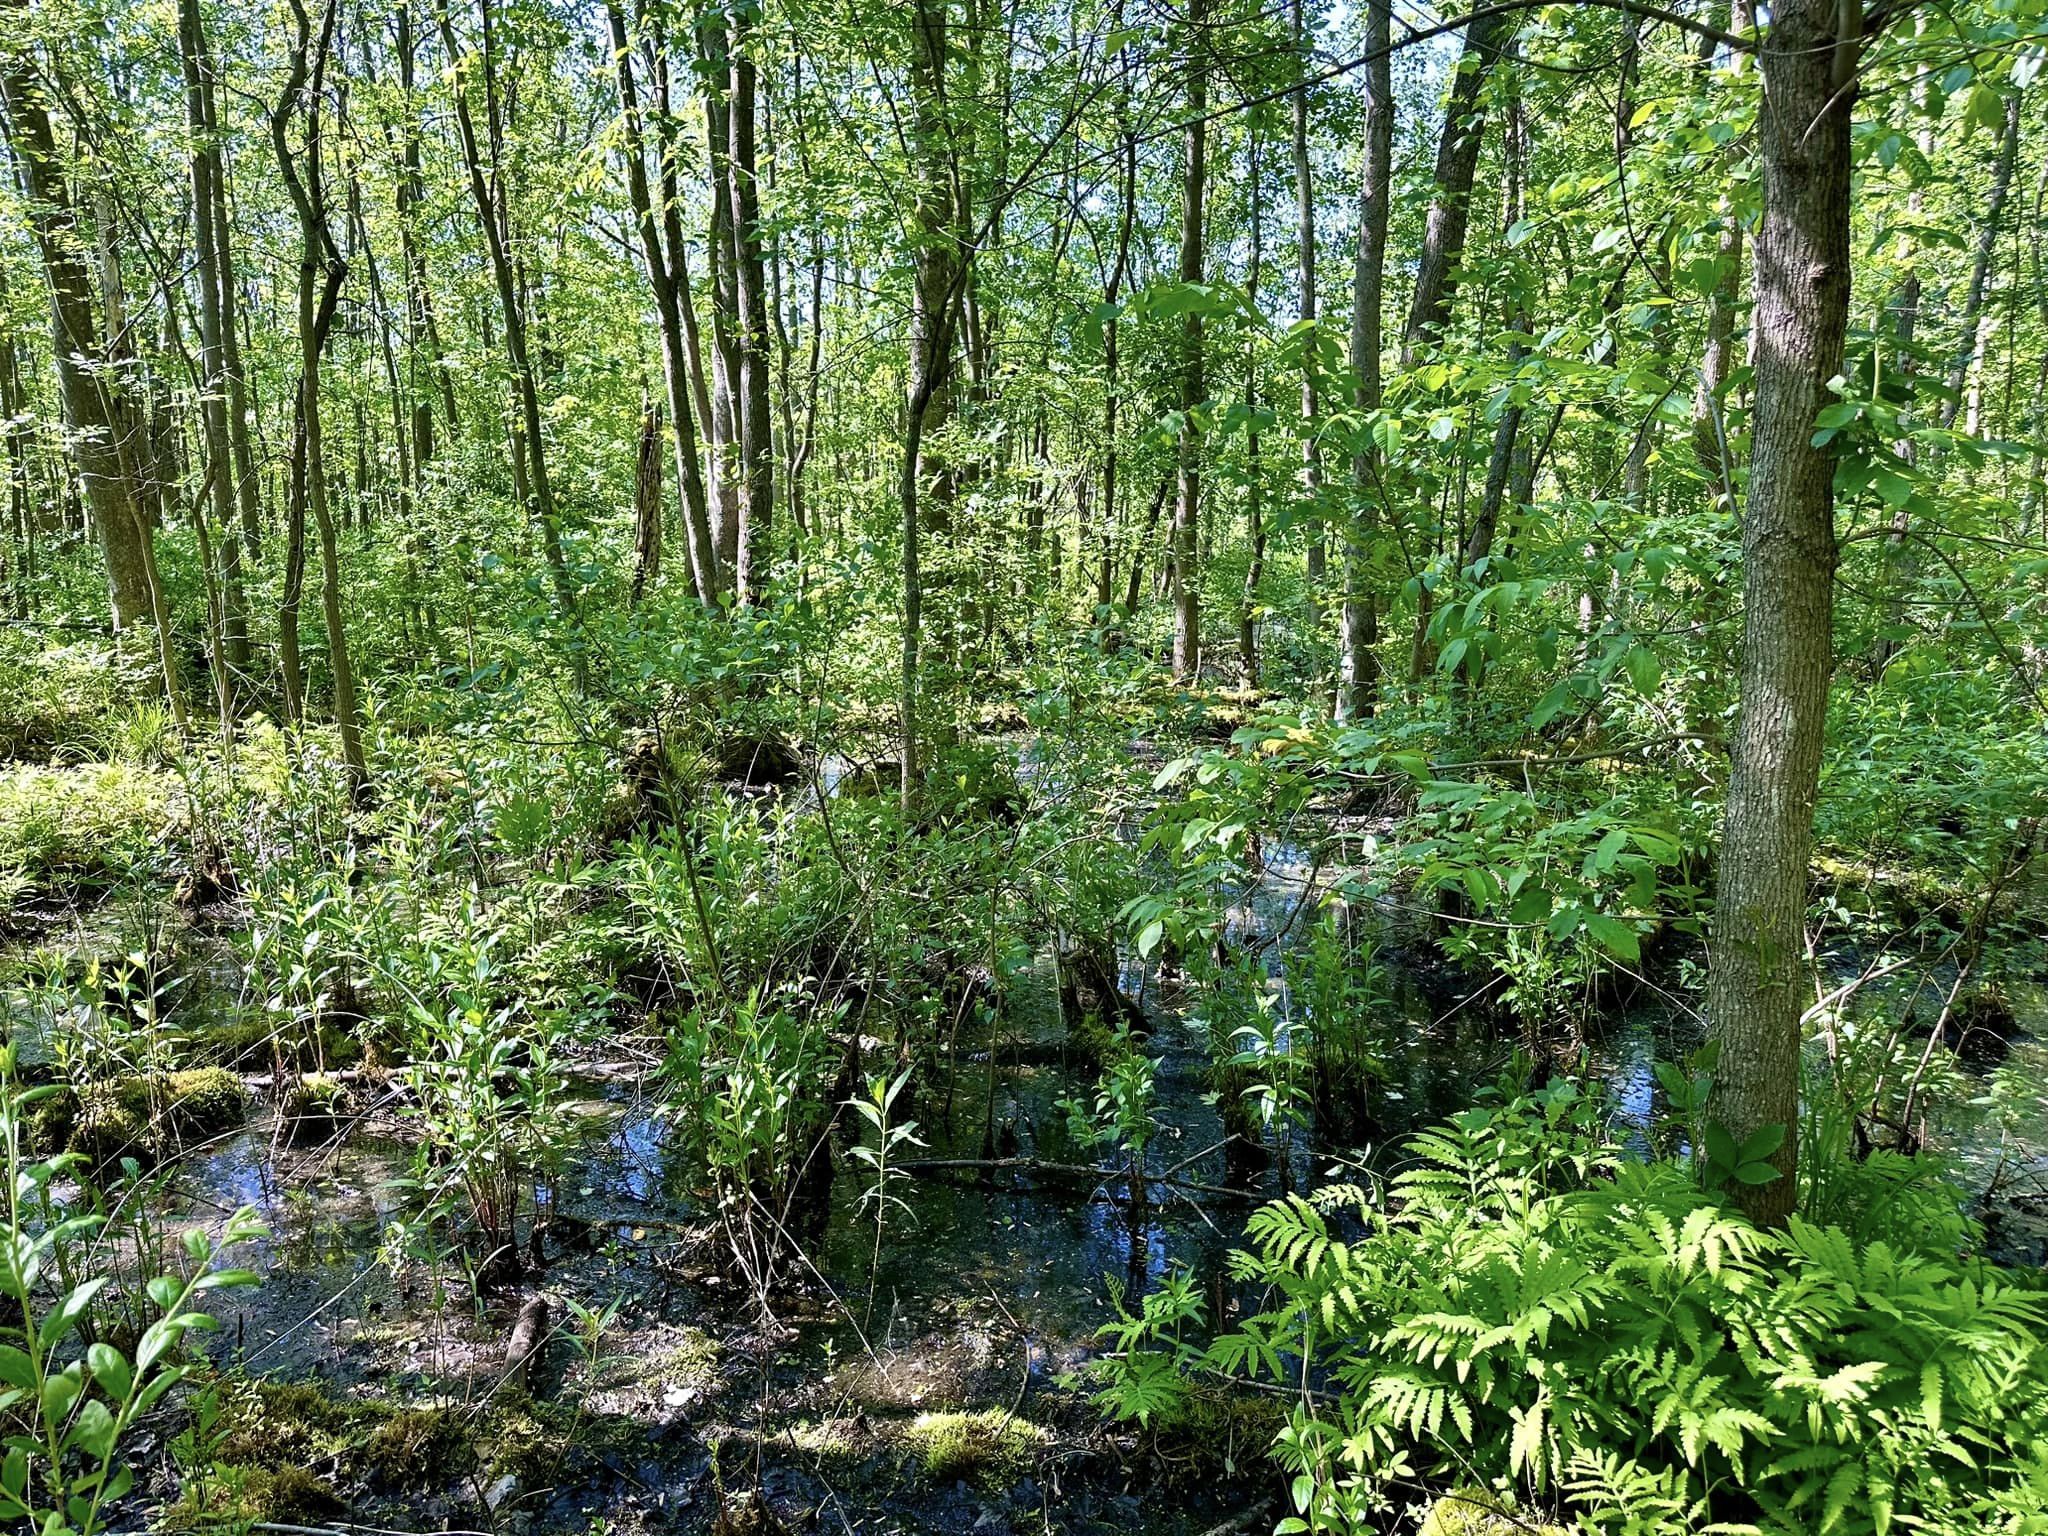 Huckleberry Swamp